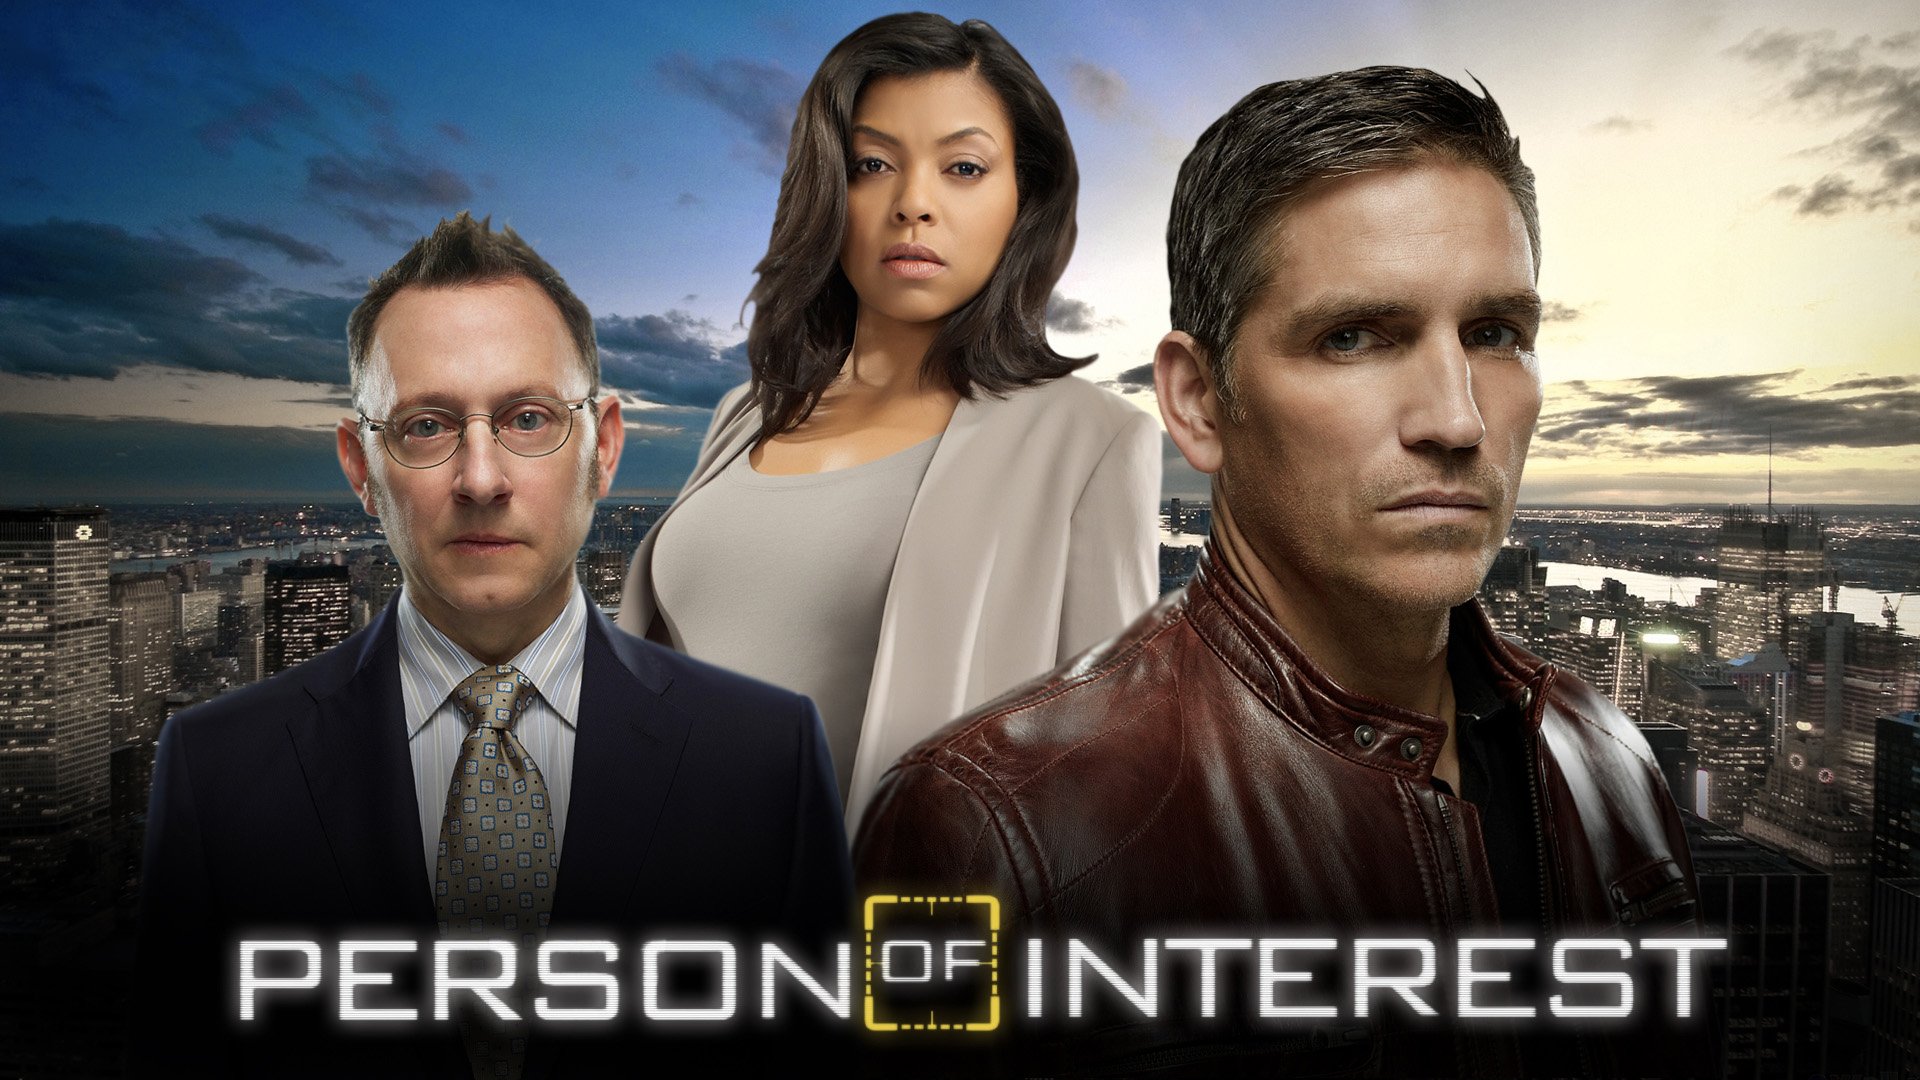 ინტერესის ობიექტი სეზონი 2 / Person of Interest Season 2 ქართულად